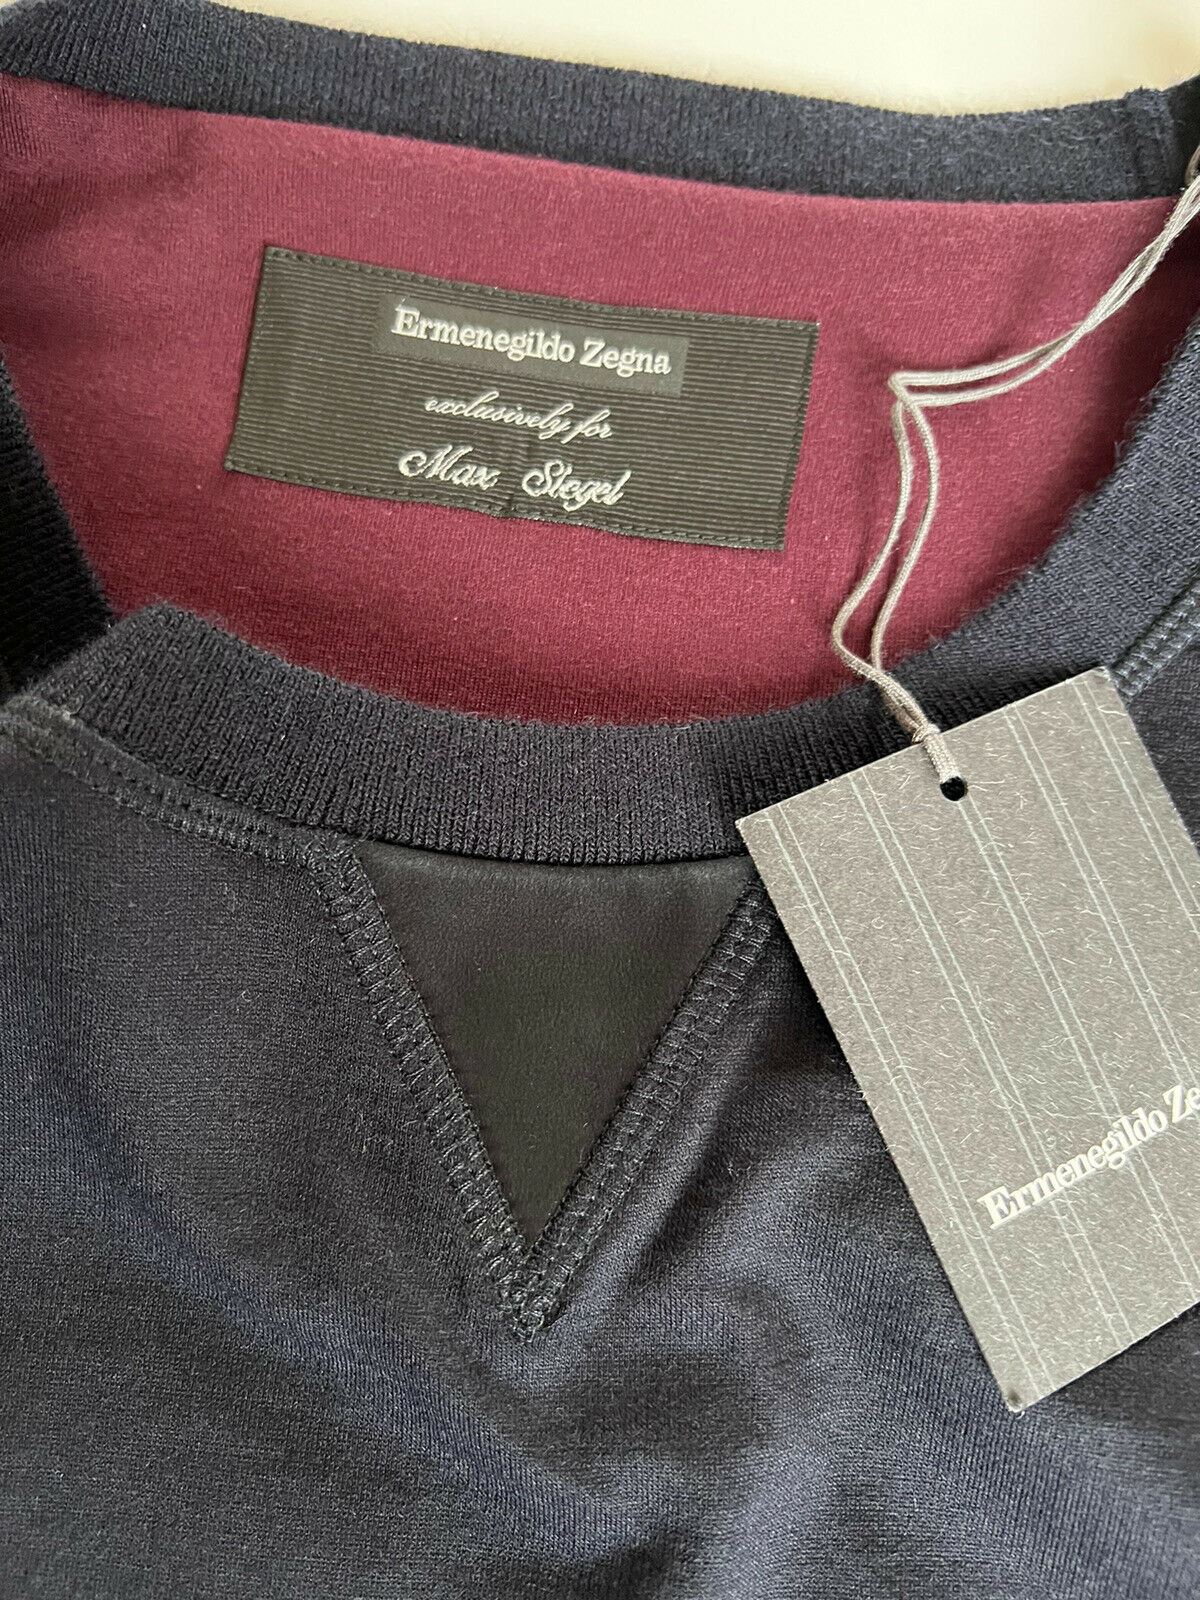 NWT $1895 Ermenegildo Zegna Men's Crewneck Cashmere/Cotton Sweater 48 US (64 Eu)